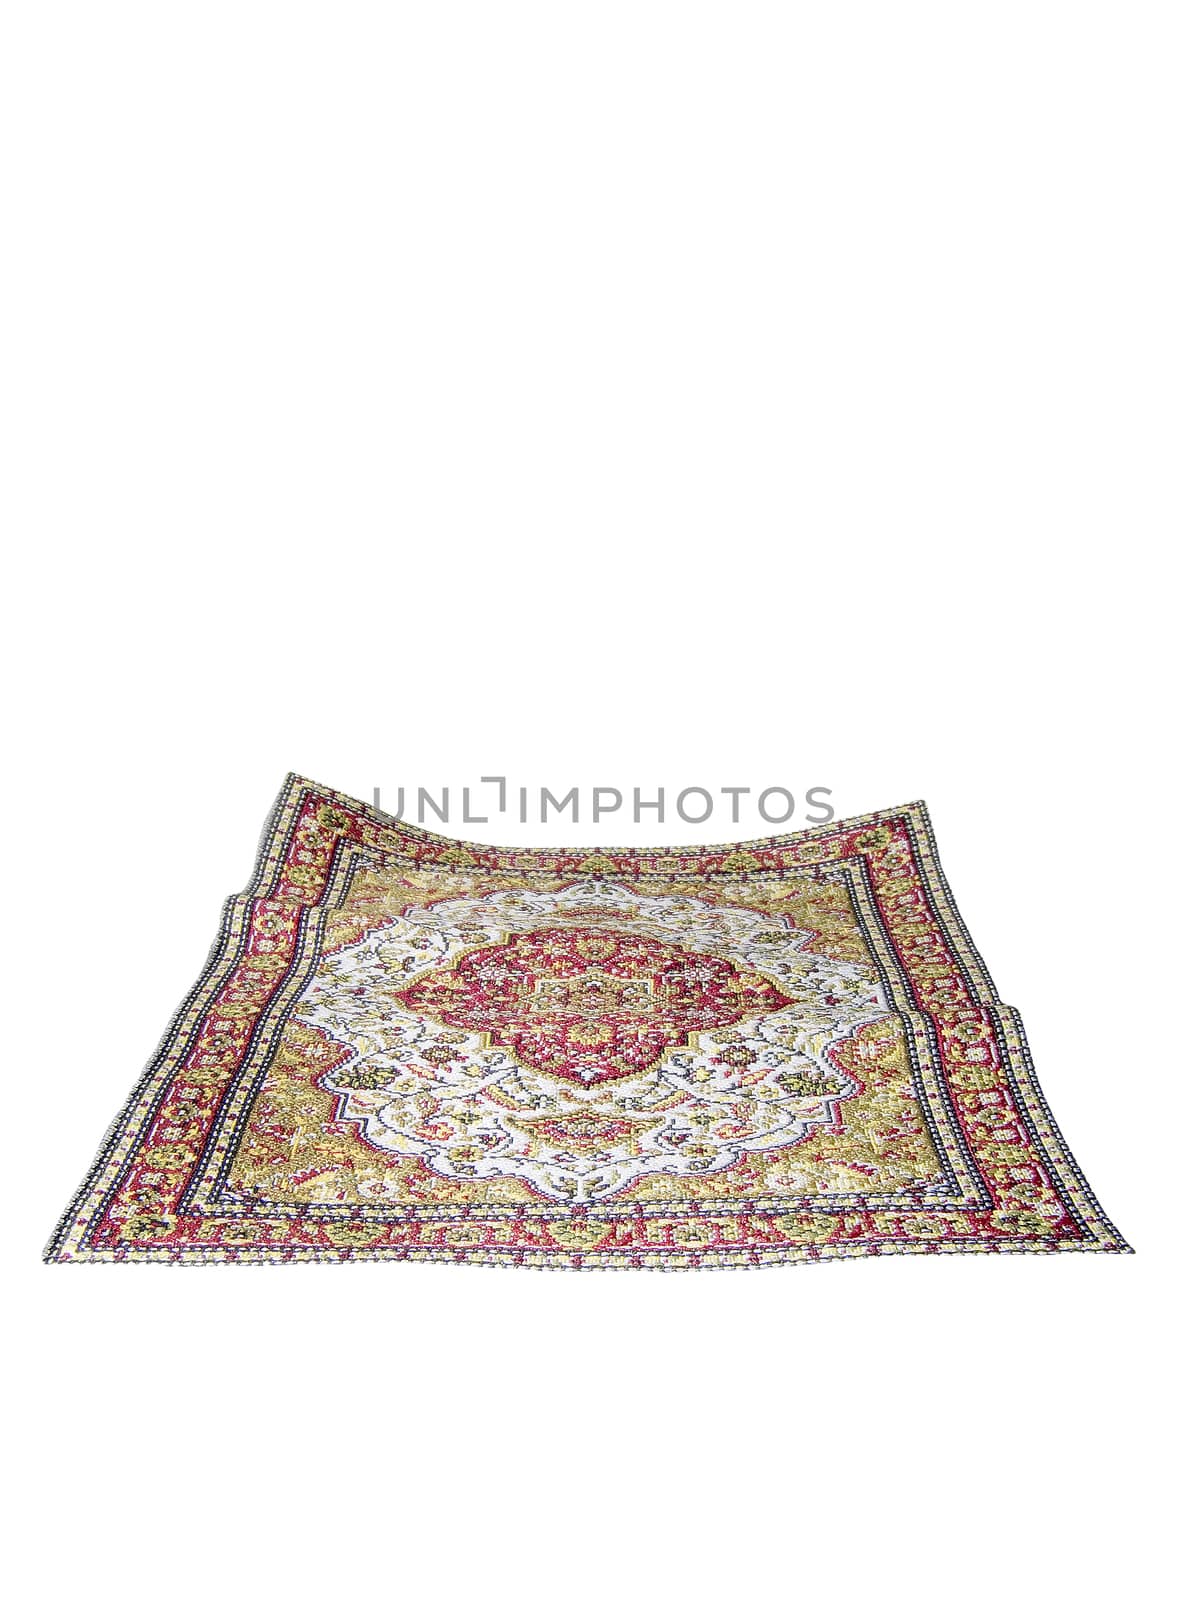 turkish carpet isolated on white background